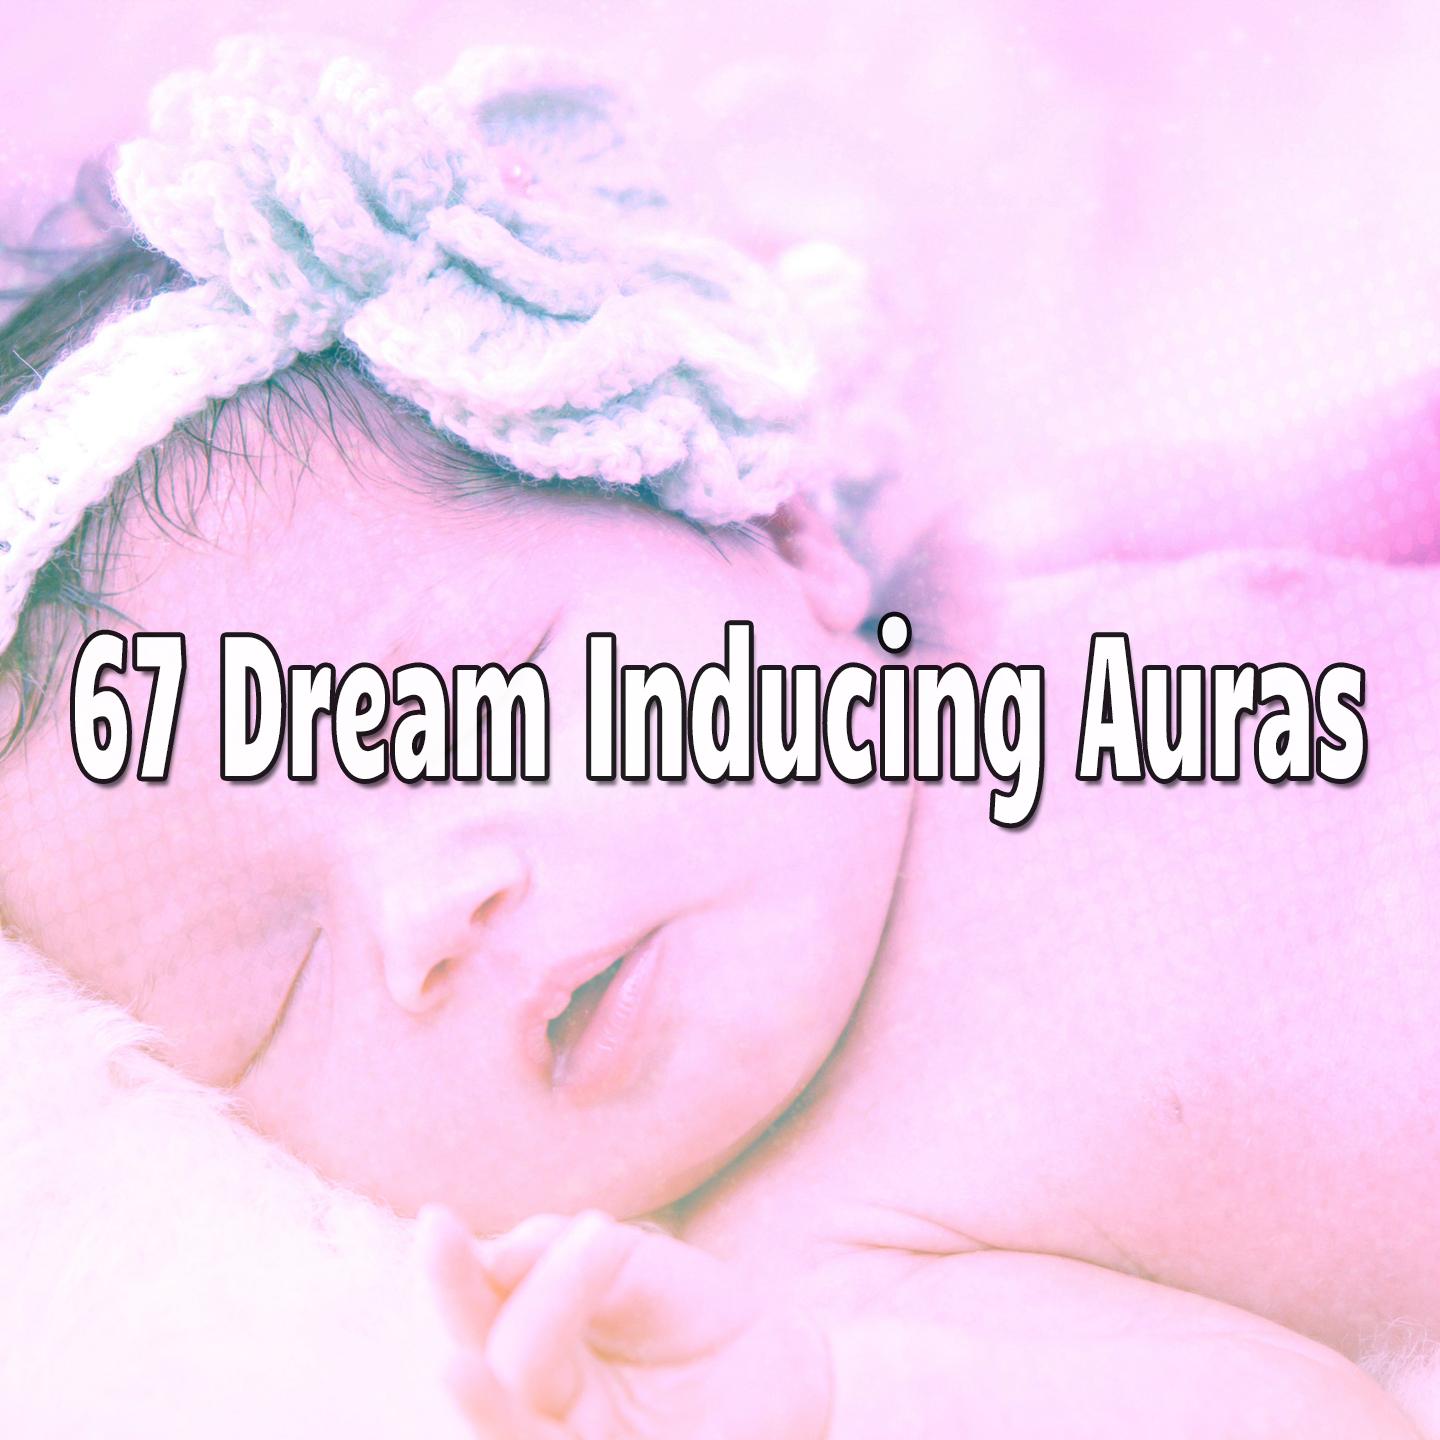 67 Dream Inducing Auras